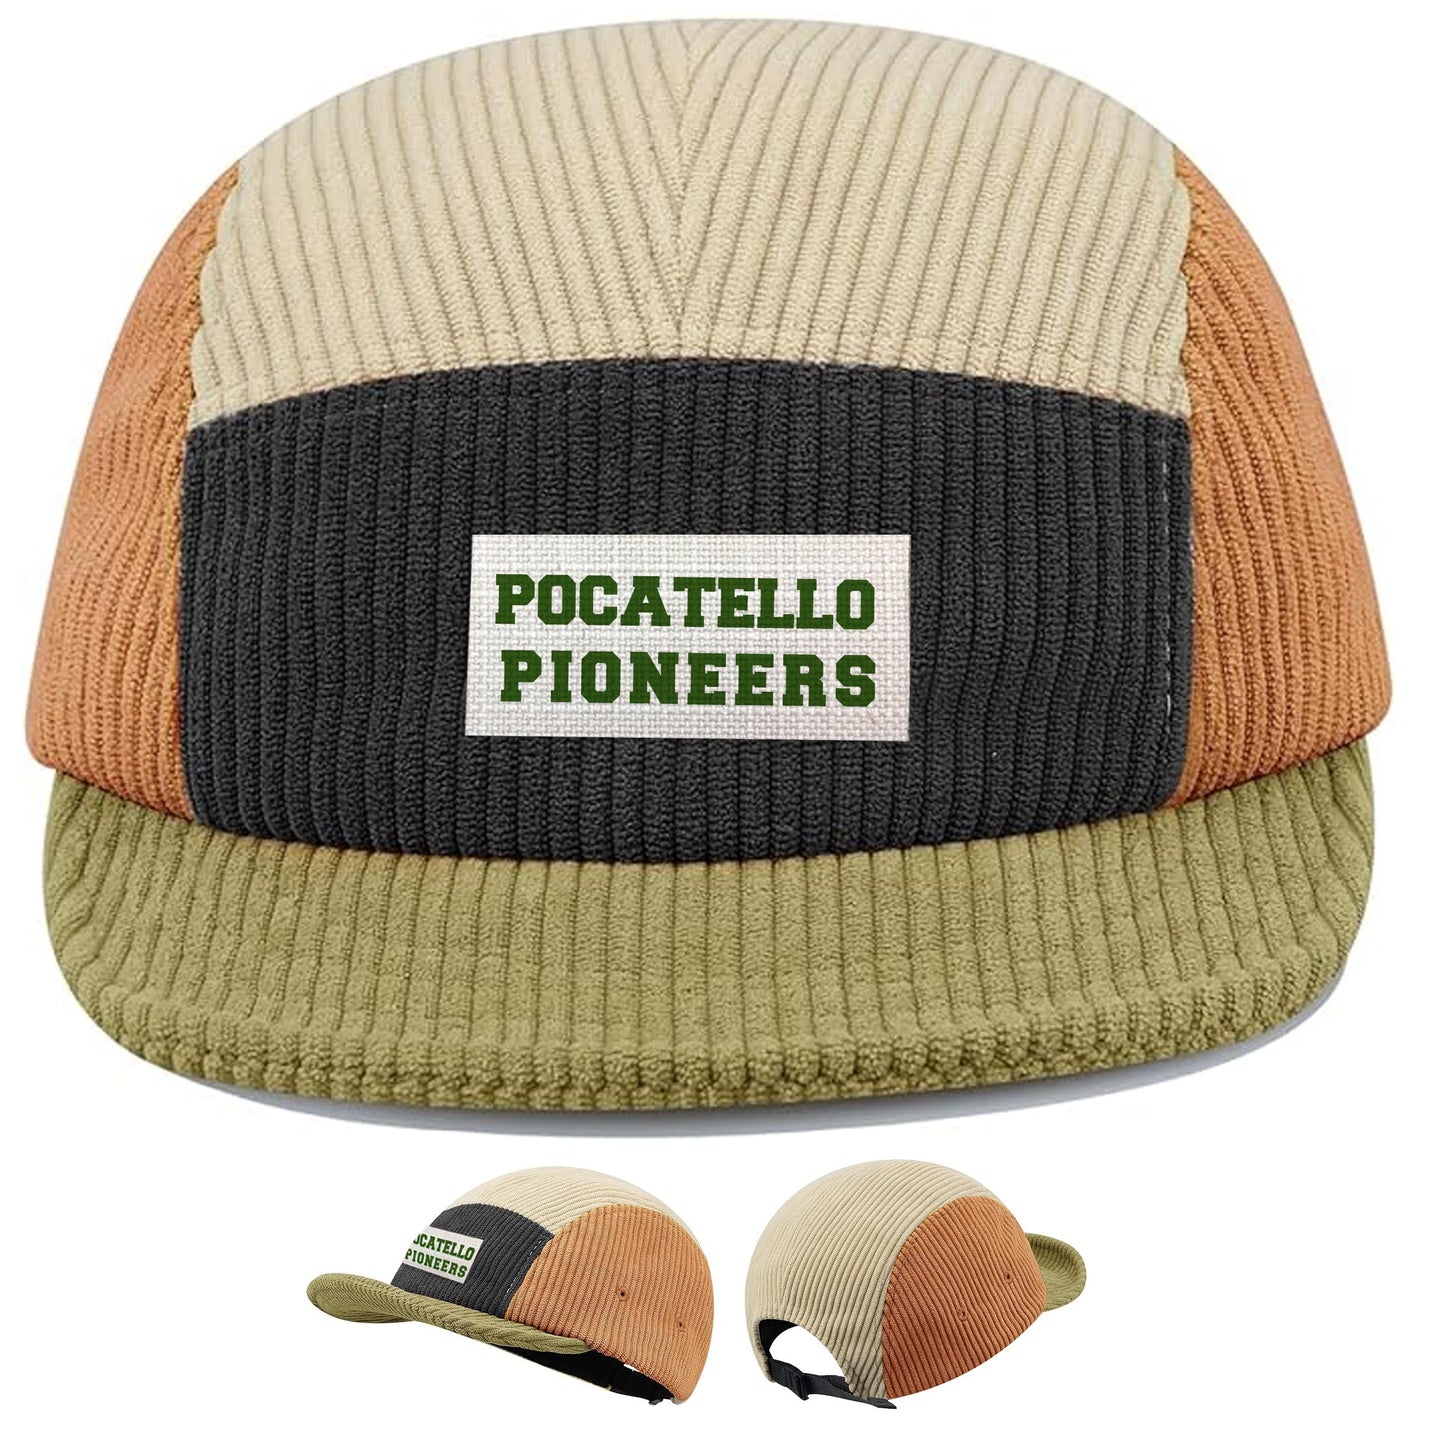 Pocatello Pioneers 5 Panel Hat